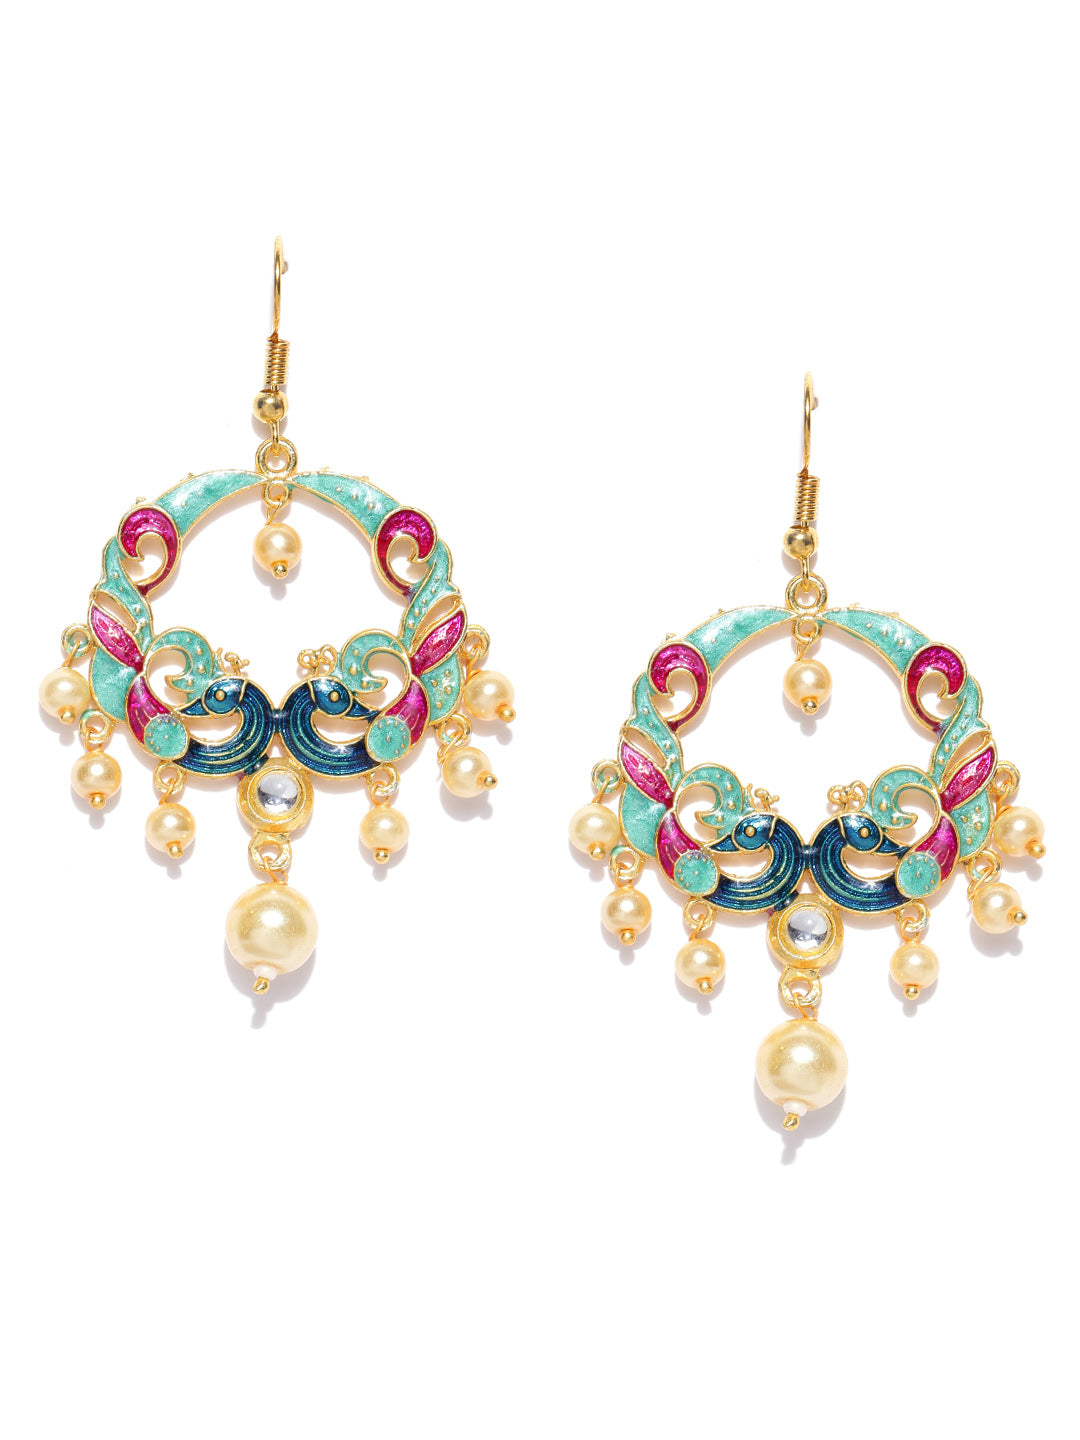 Peacock Inspired Traditional Ethnic Gold Plated Meenakari Designer Earring For Girls & Women